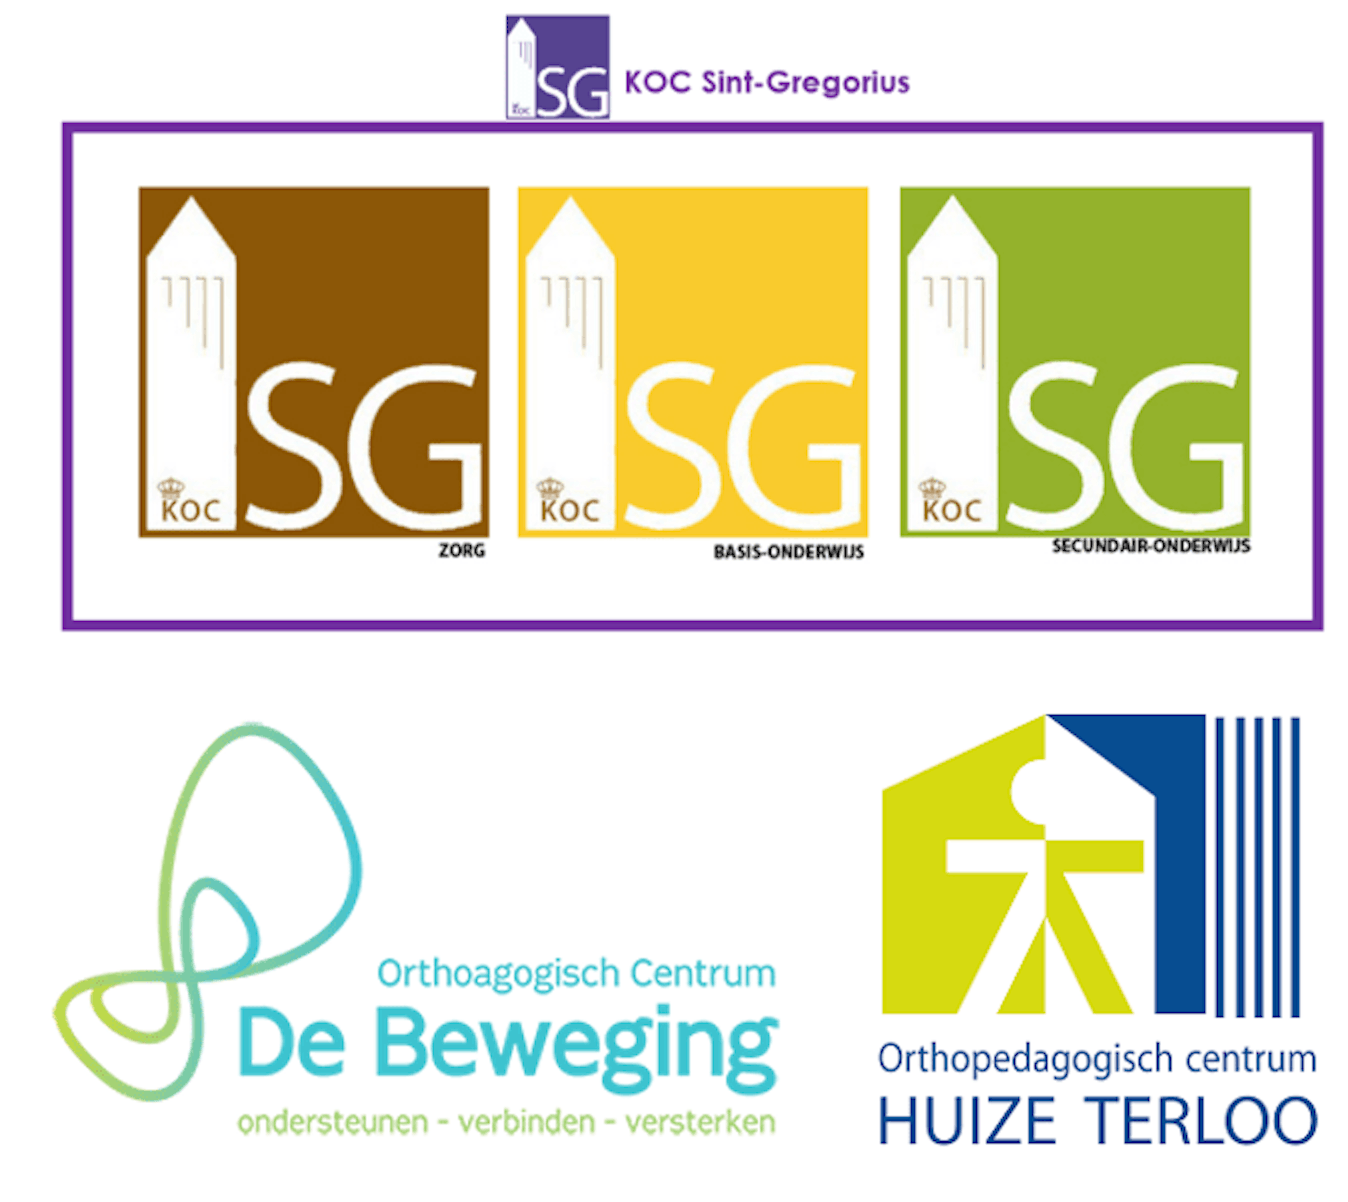 KOC SINT-GREGORIUS - OC DE BEWEGING - HUIZE TERLOO logo